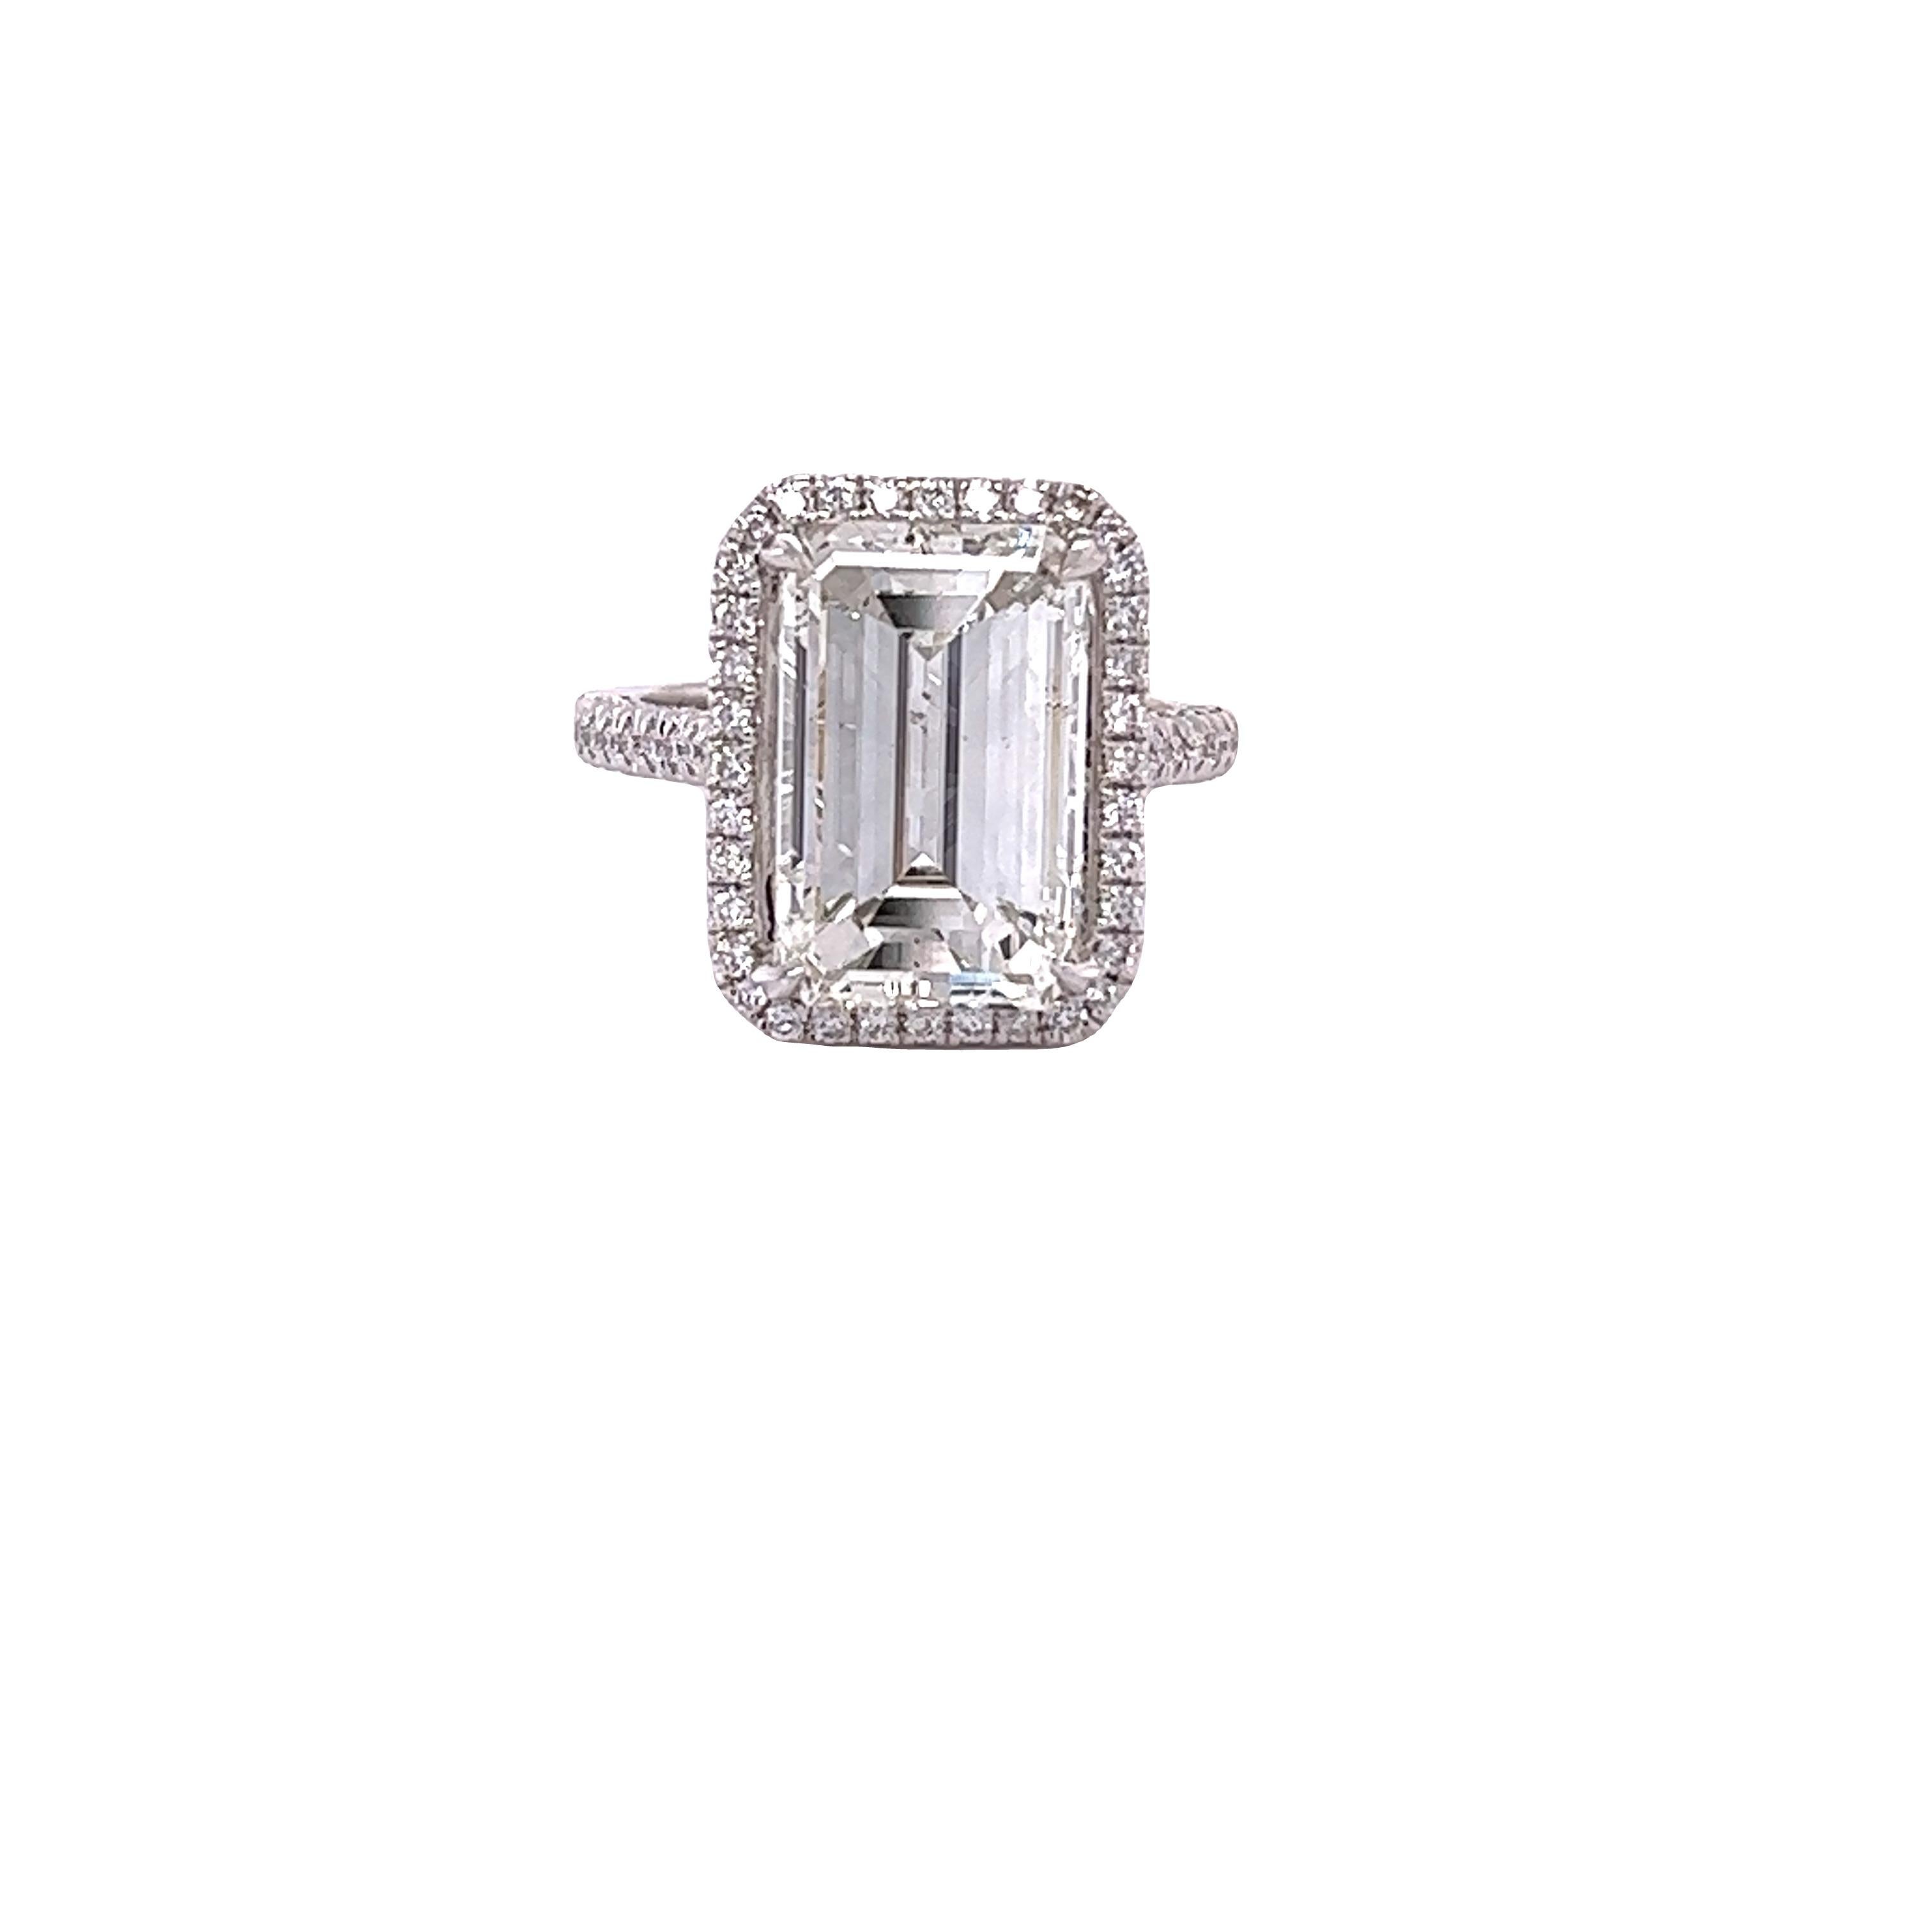 David Rosenberg 7.06 Carat Emerald Cut GIA Diamond Engagement Ring 1